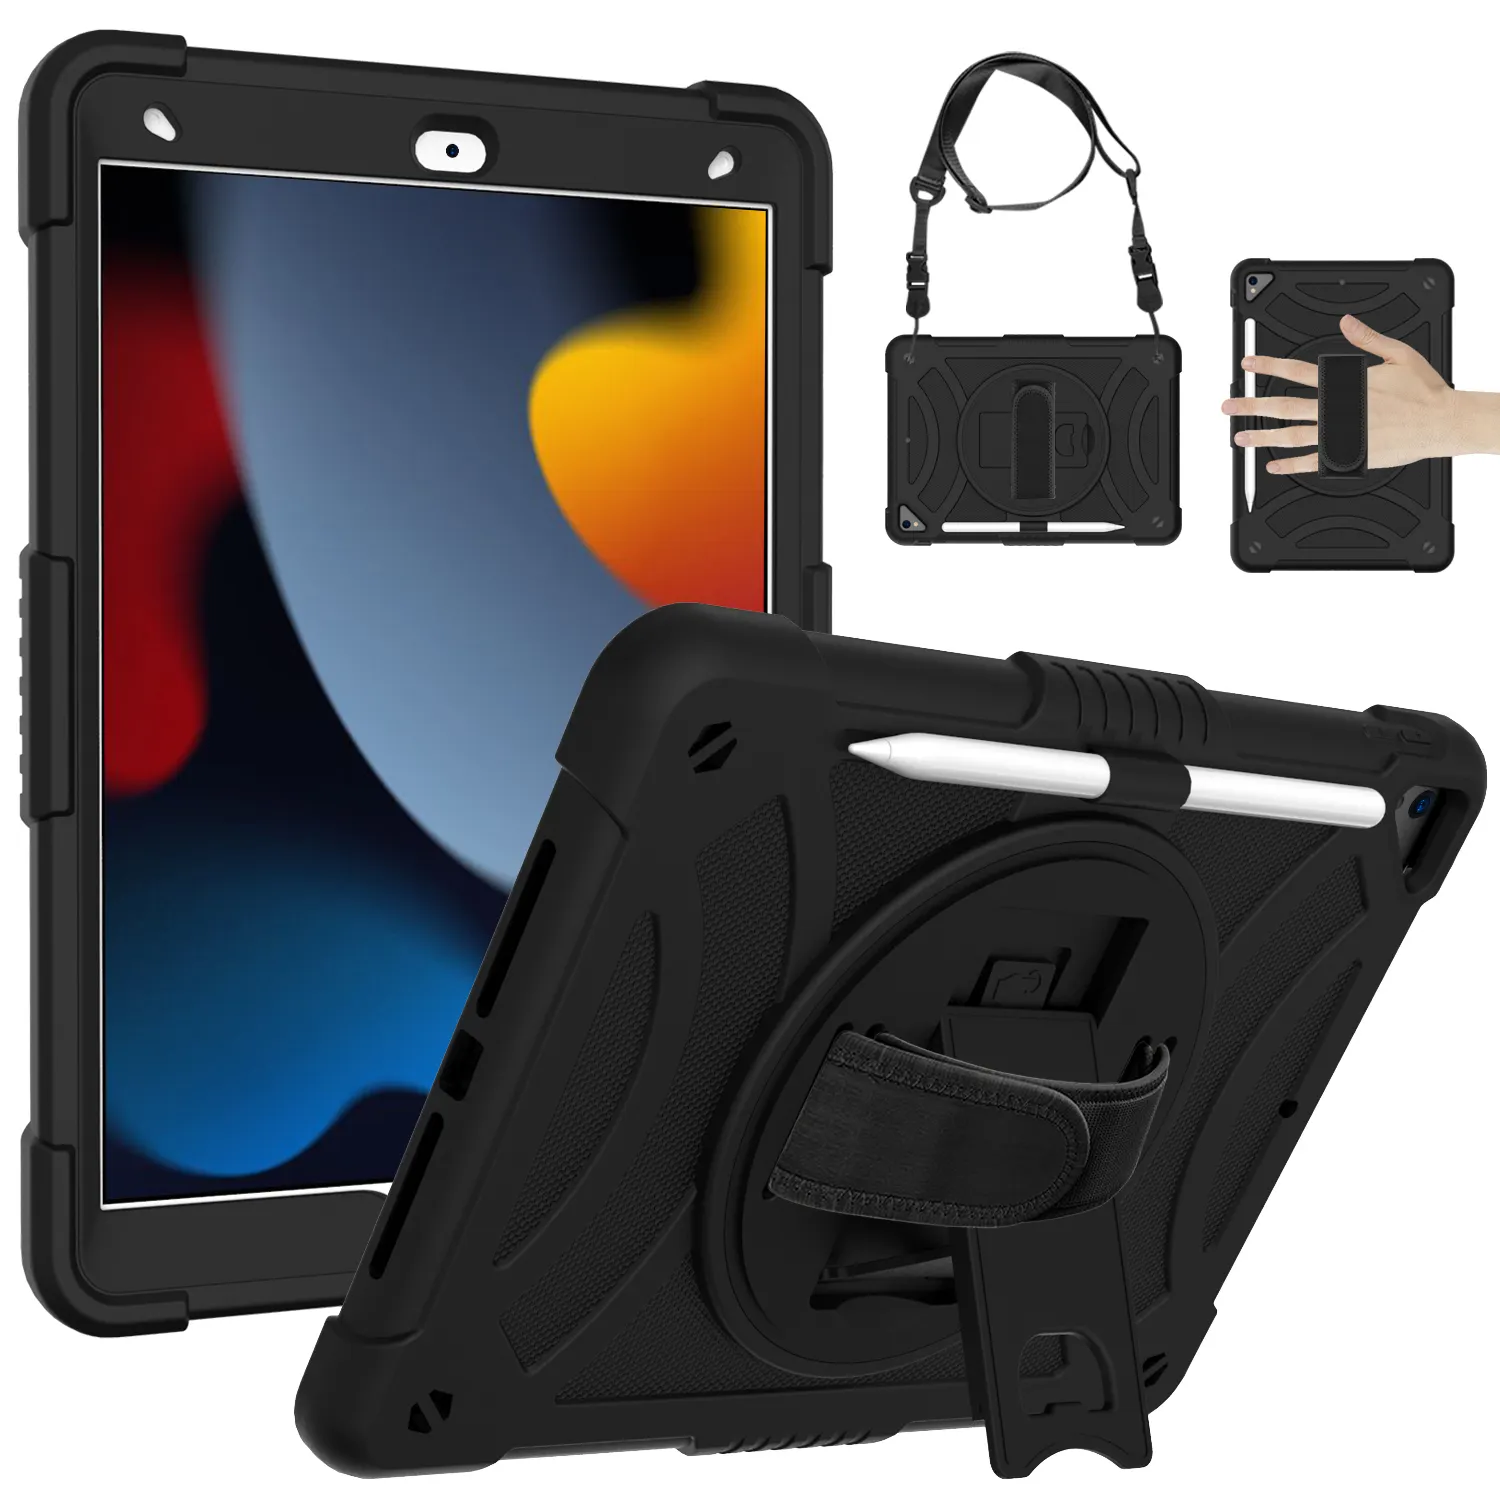 Hot Seller Zubehör Schutz funktion Universal Shock proof Case mit Schultern für iPad Air4/5 10,9 Zoll